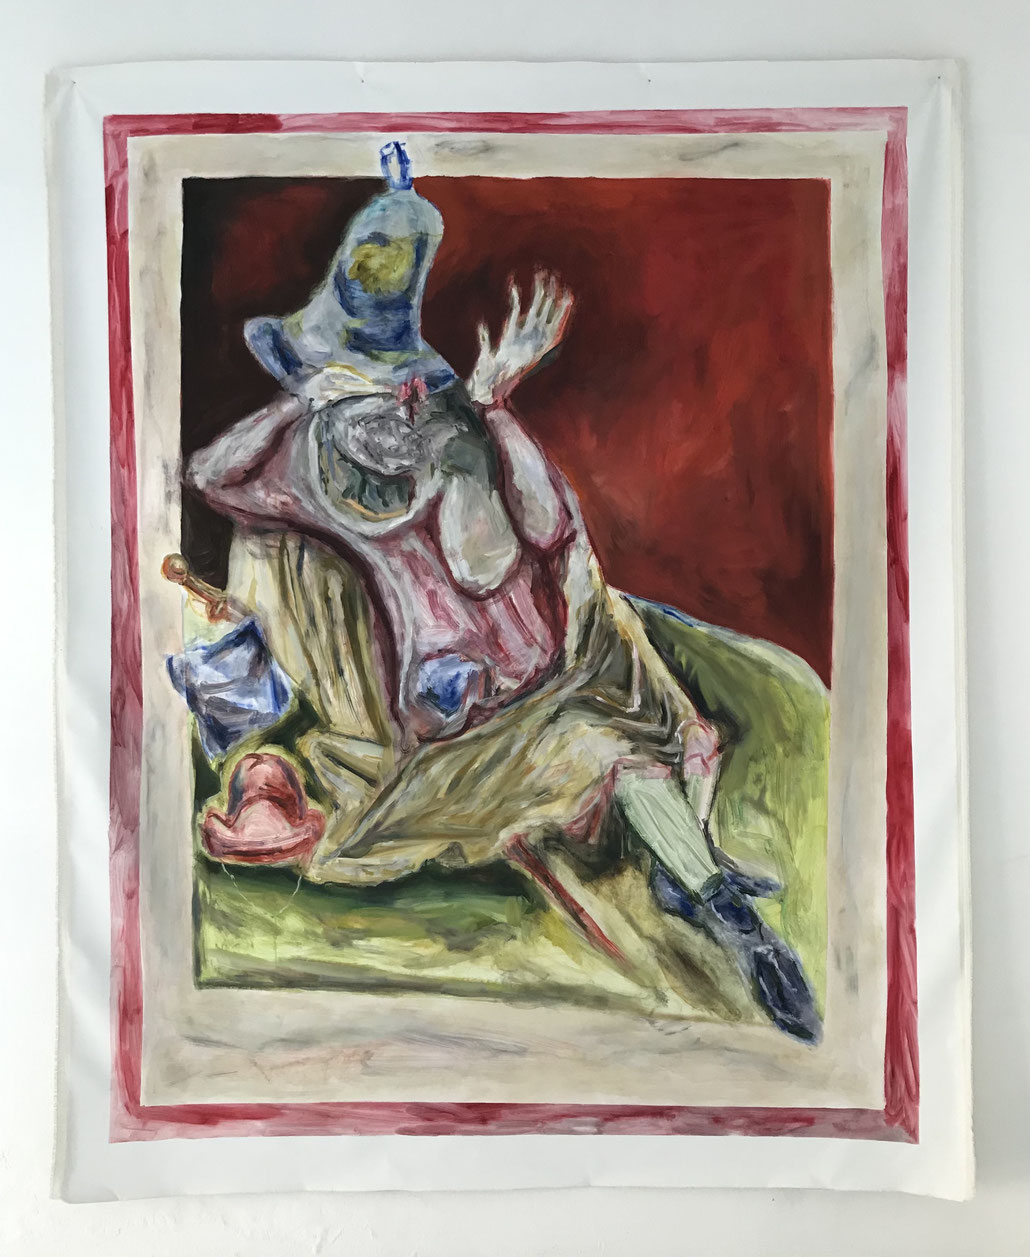 Un pellegrino colpito da una campana, site specific project, pigment and oil on canvas, cm 220x270, 2022